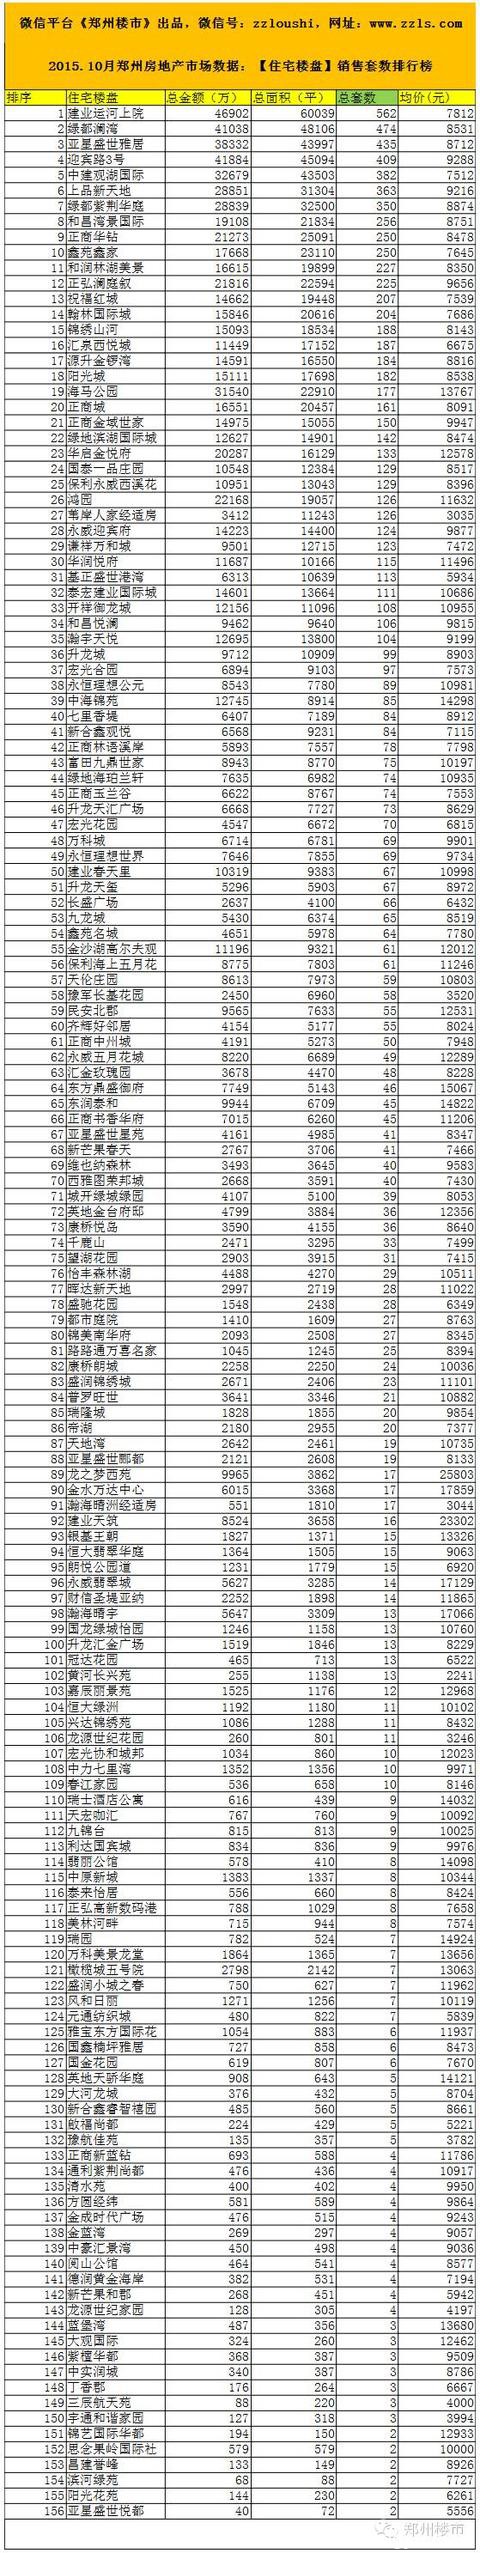 2015.10月郑州房地产市场数据：93个房企/156个住宅